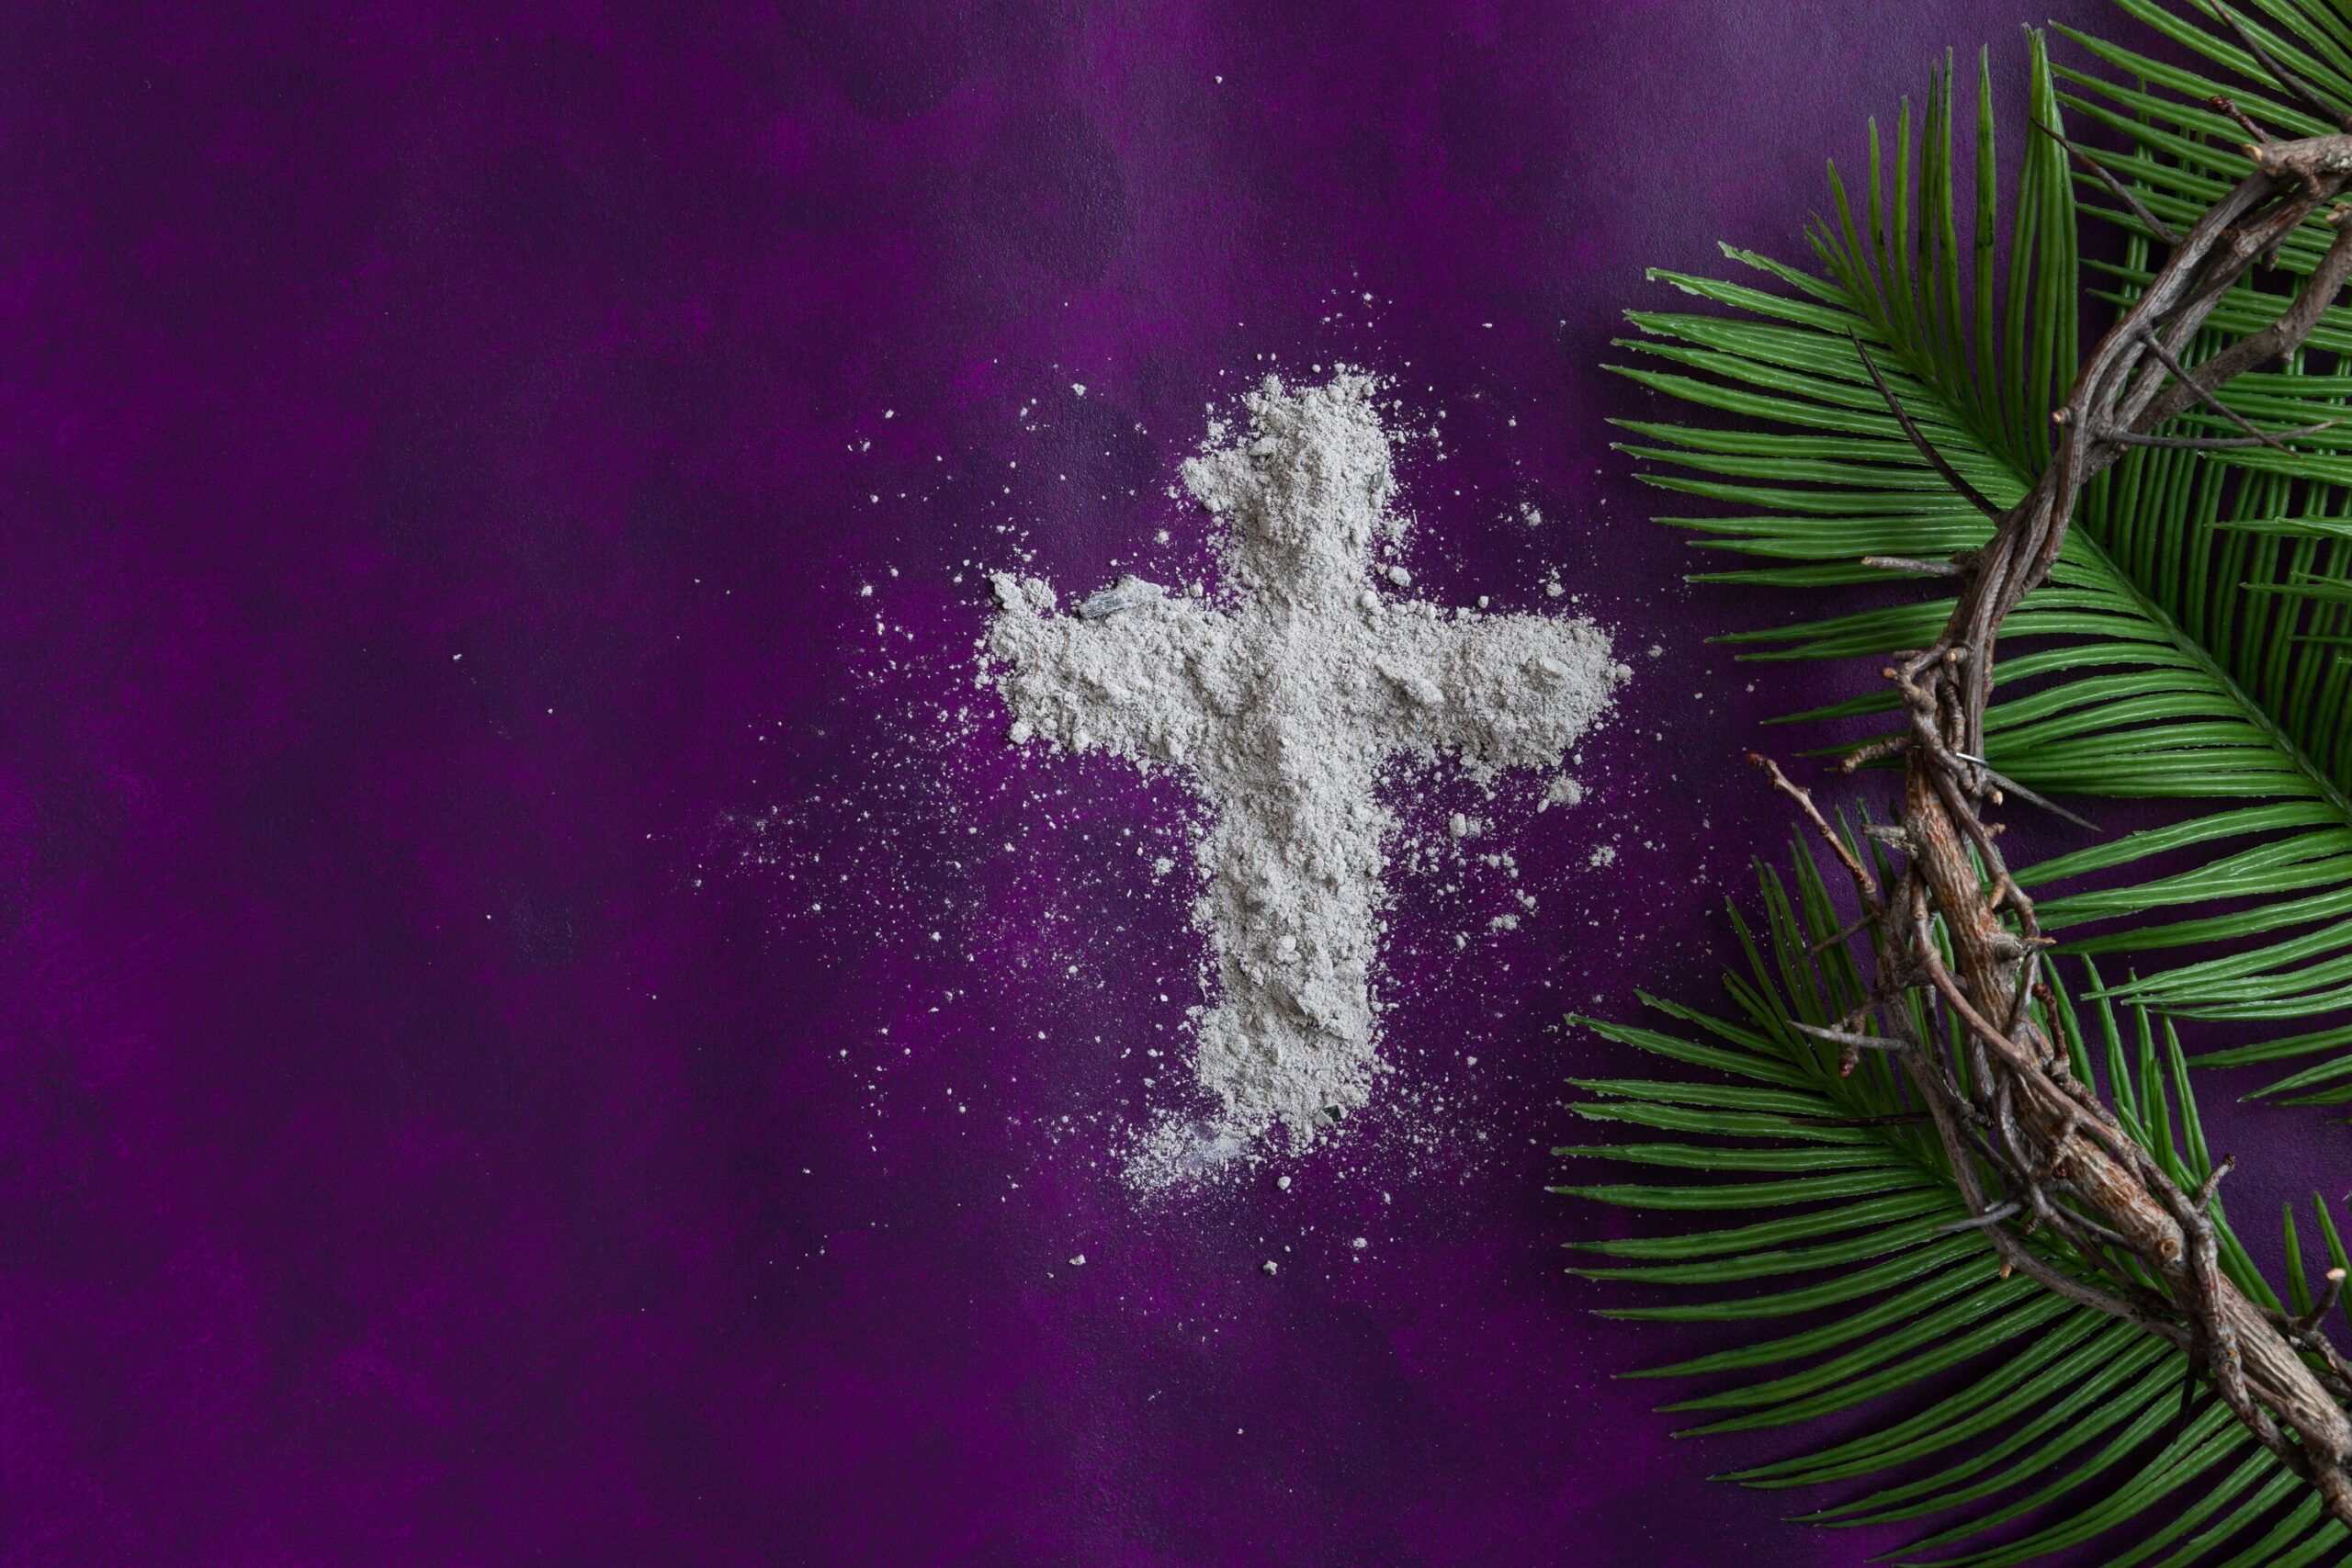 Aschekreuz, Palmzweige und eine Dornenkrone auf dunkelviolettem Hintergrund symbolisieren die Fastenzeit